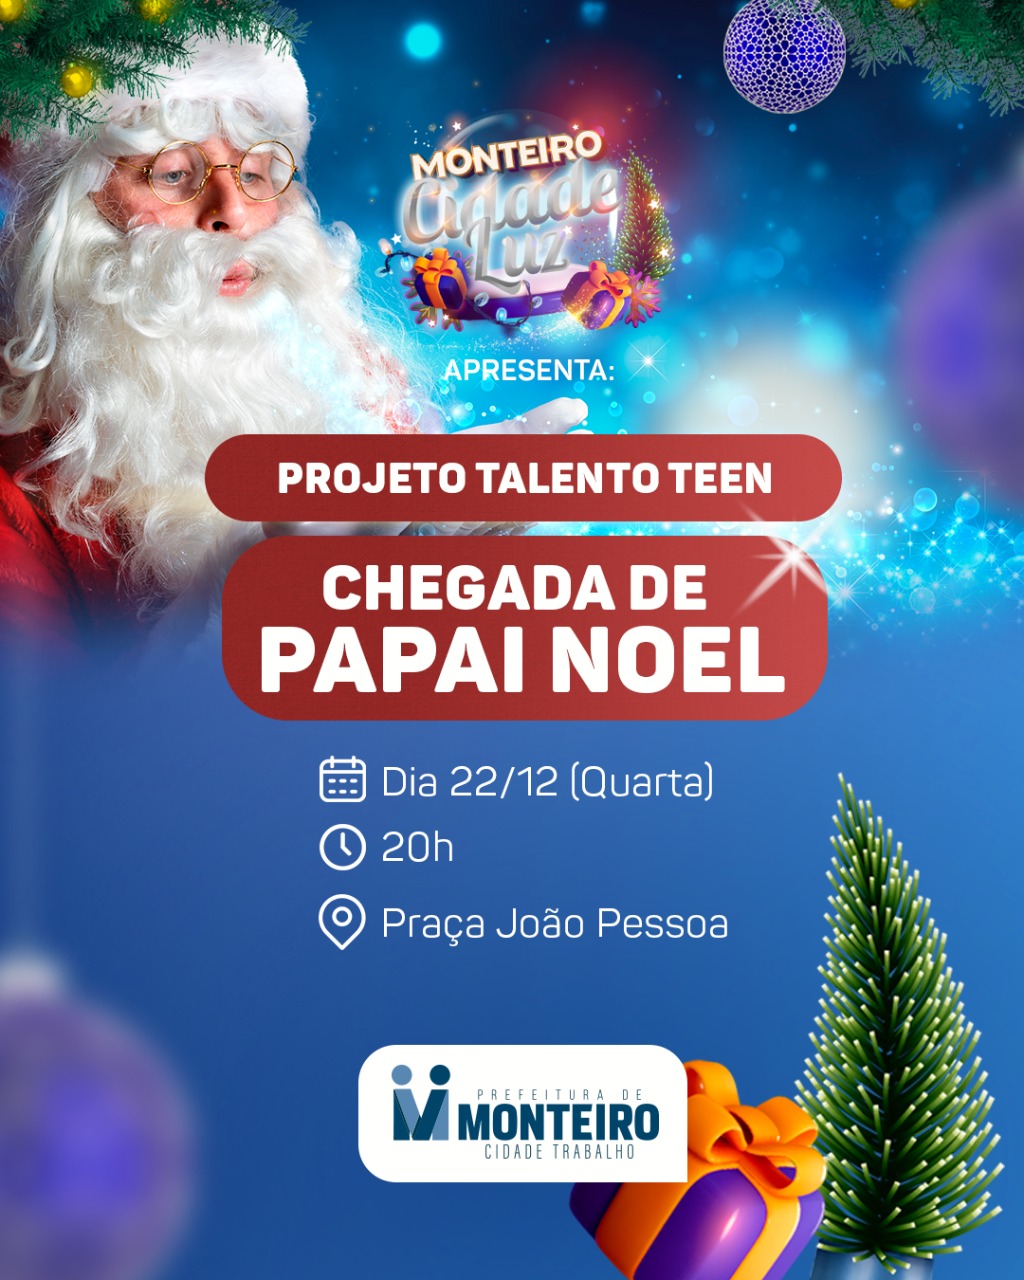 Chegada do Papai Noel promete movimentar mais uma noite de comemorações do período natalino em Monteiro